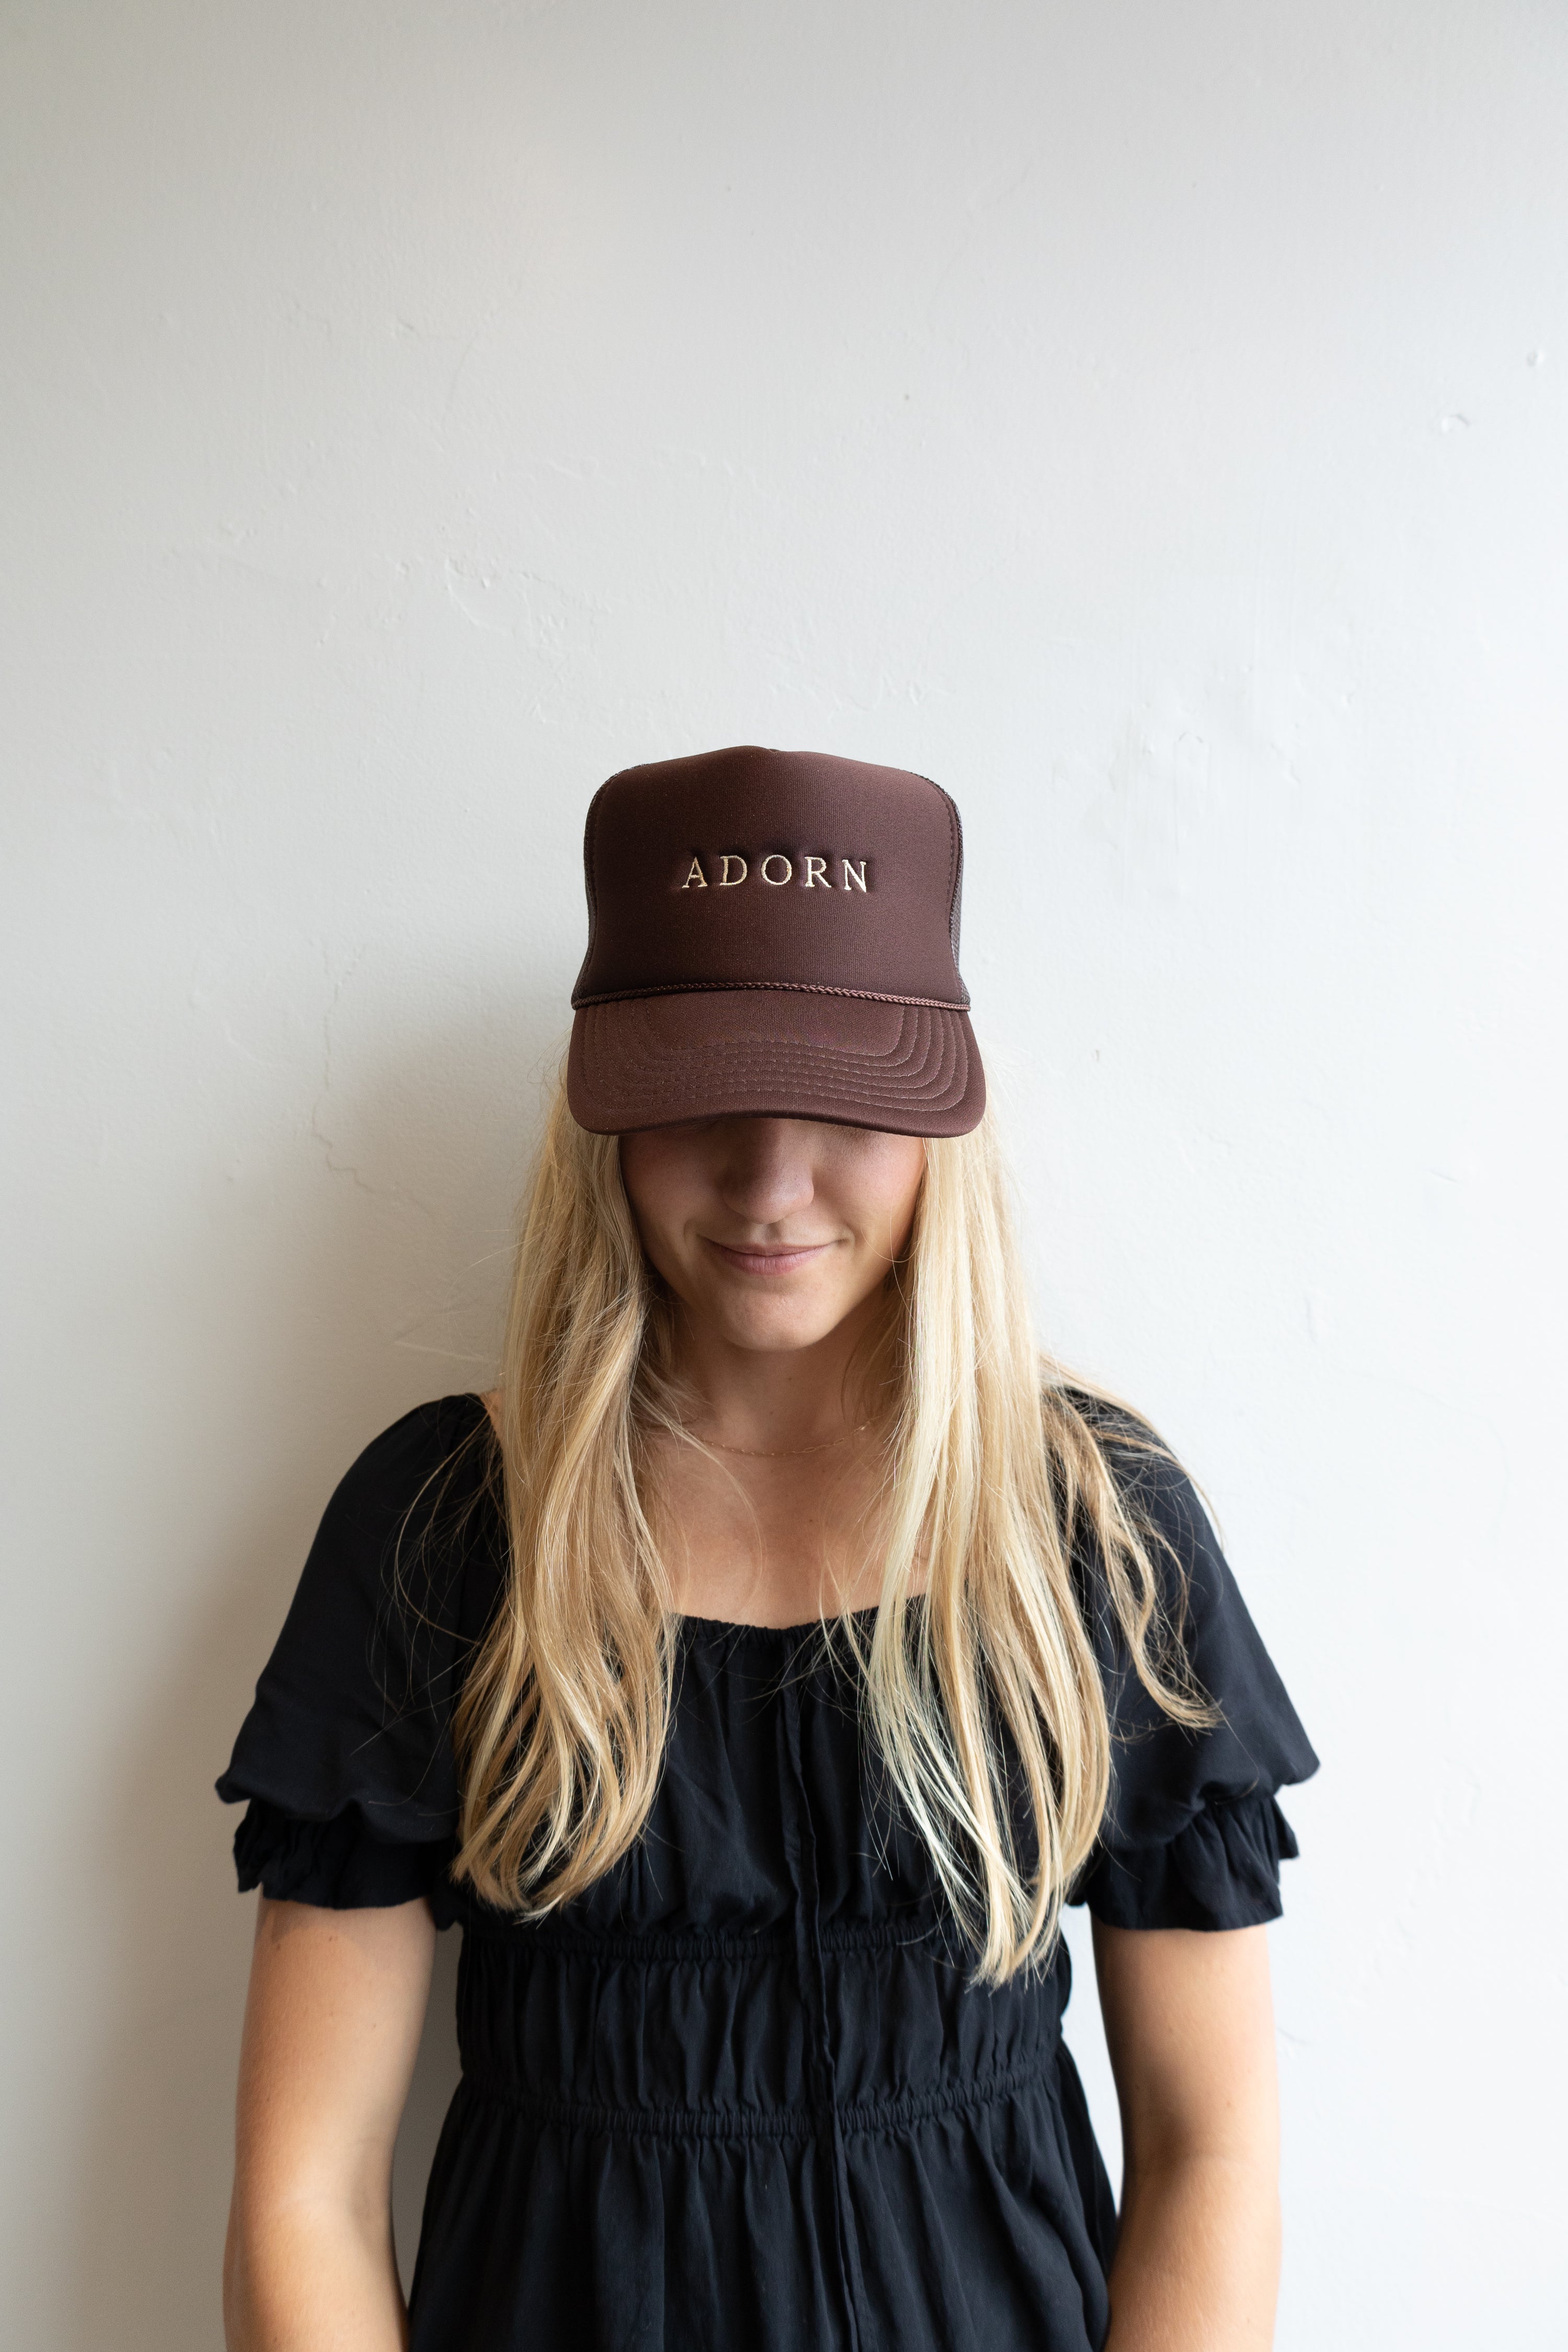 Adorn Trucker Hats